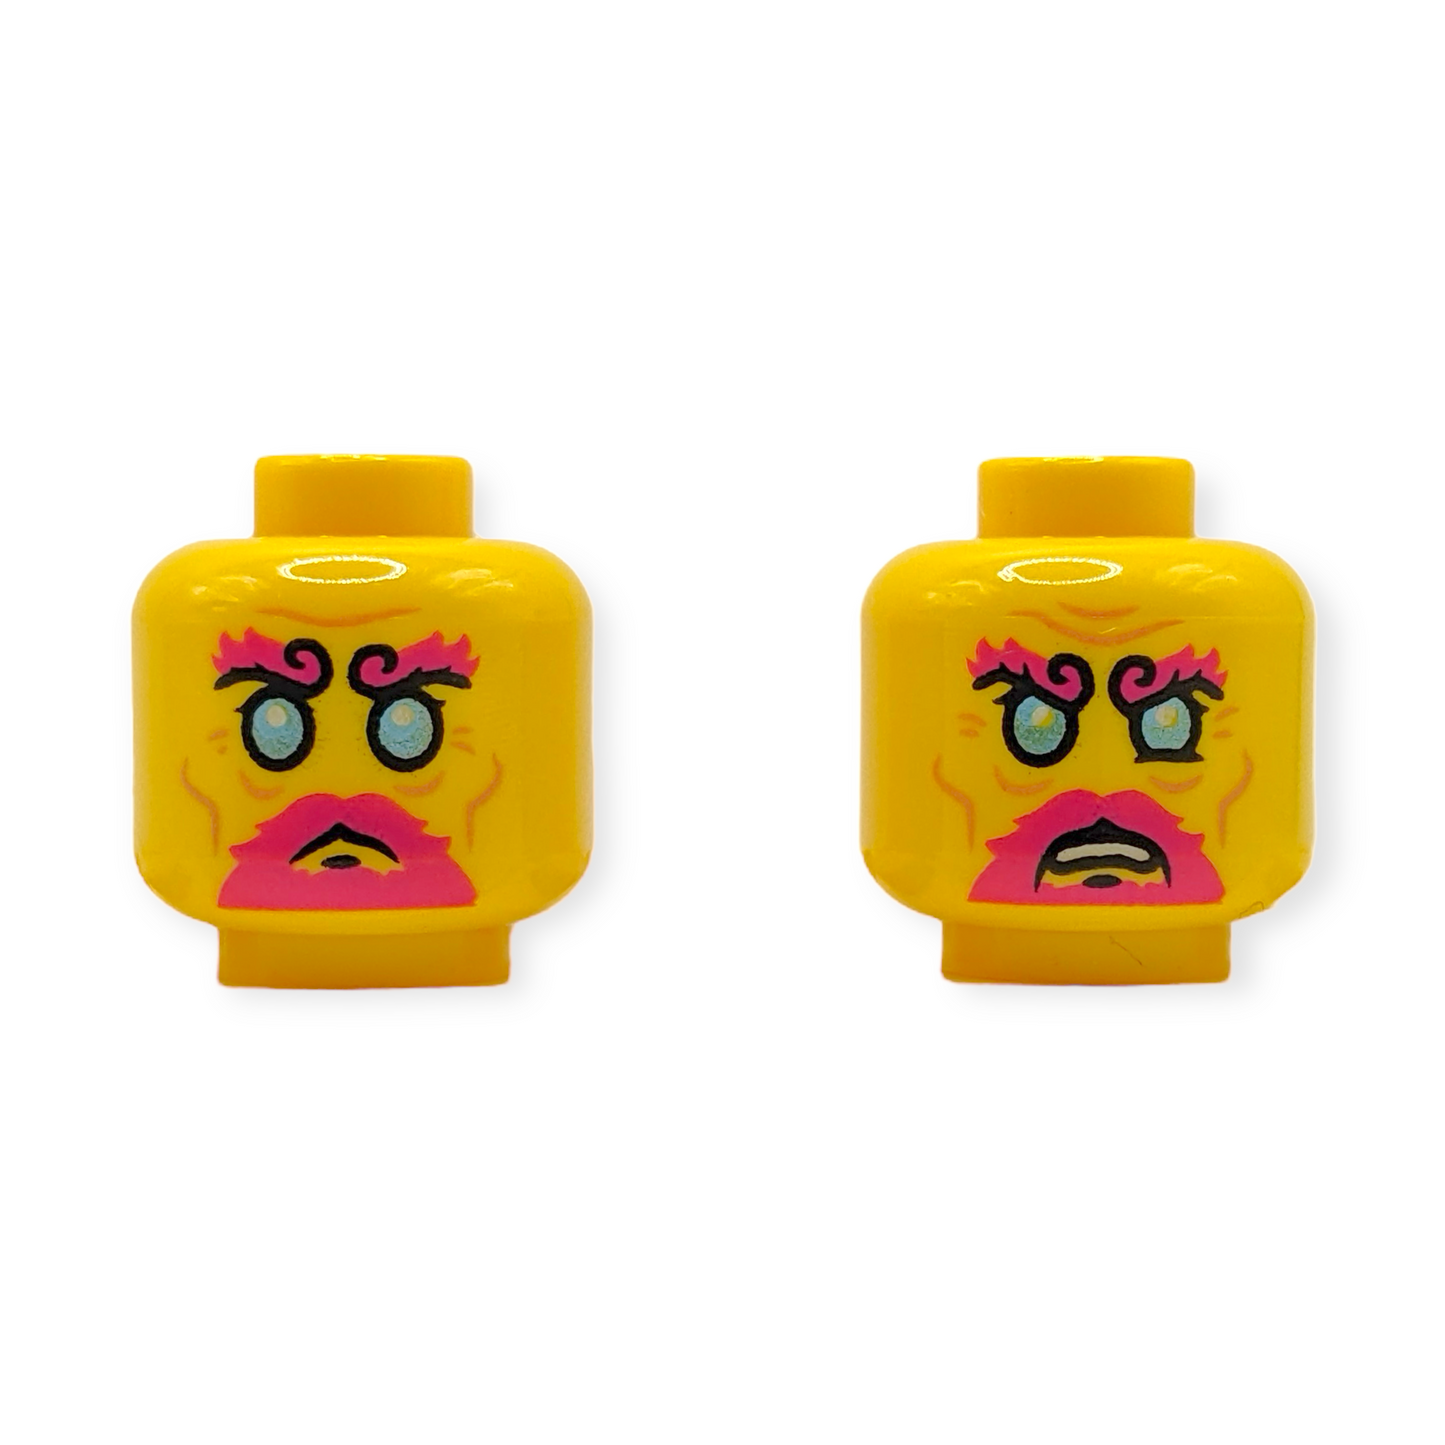 LEGO Head - 3712 Dual Sided Metallic Light Blue Eyes